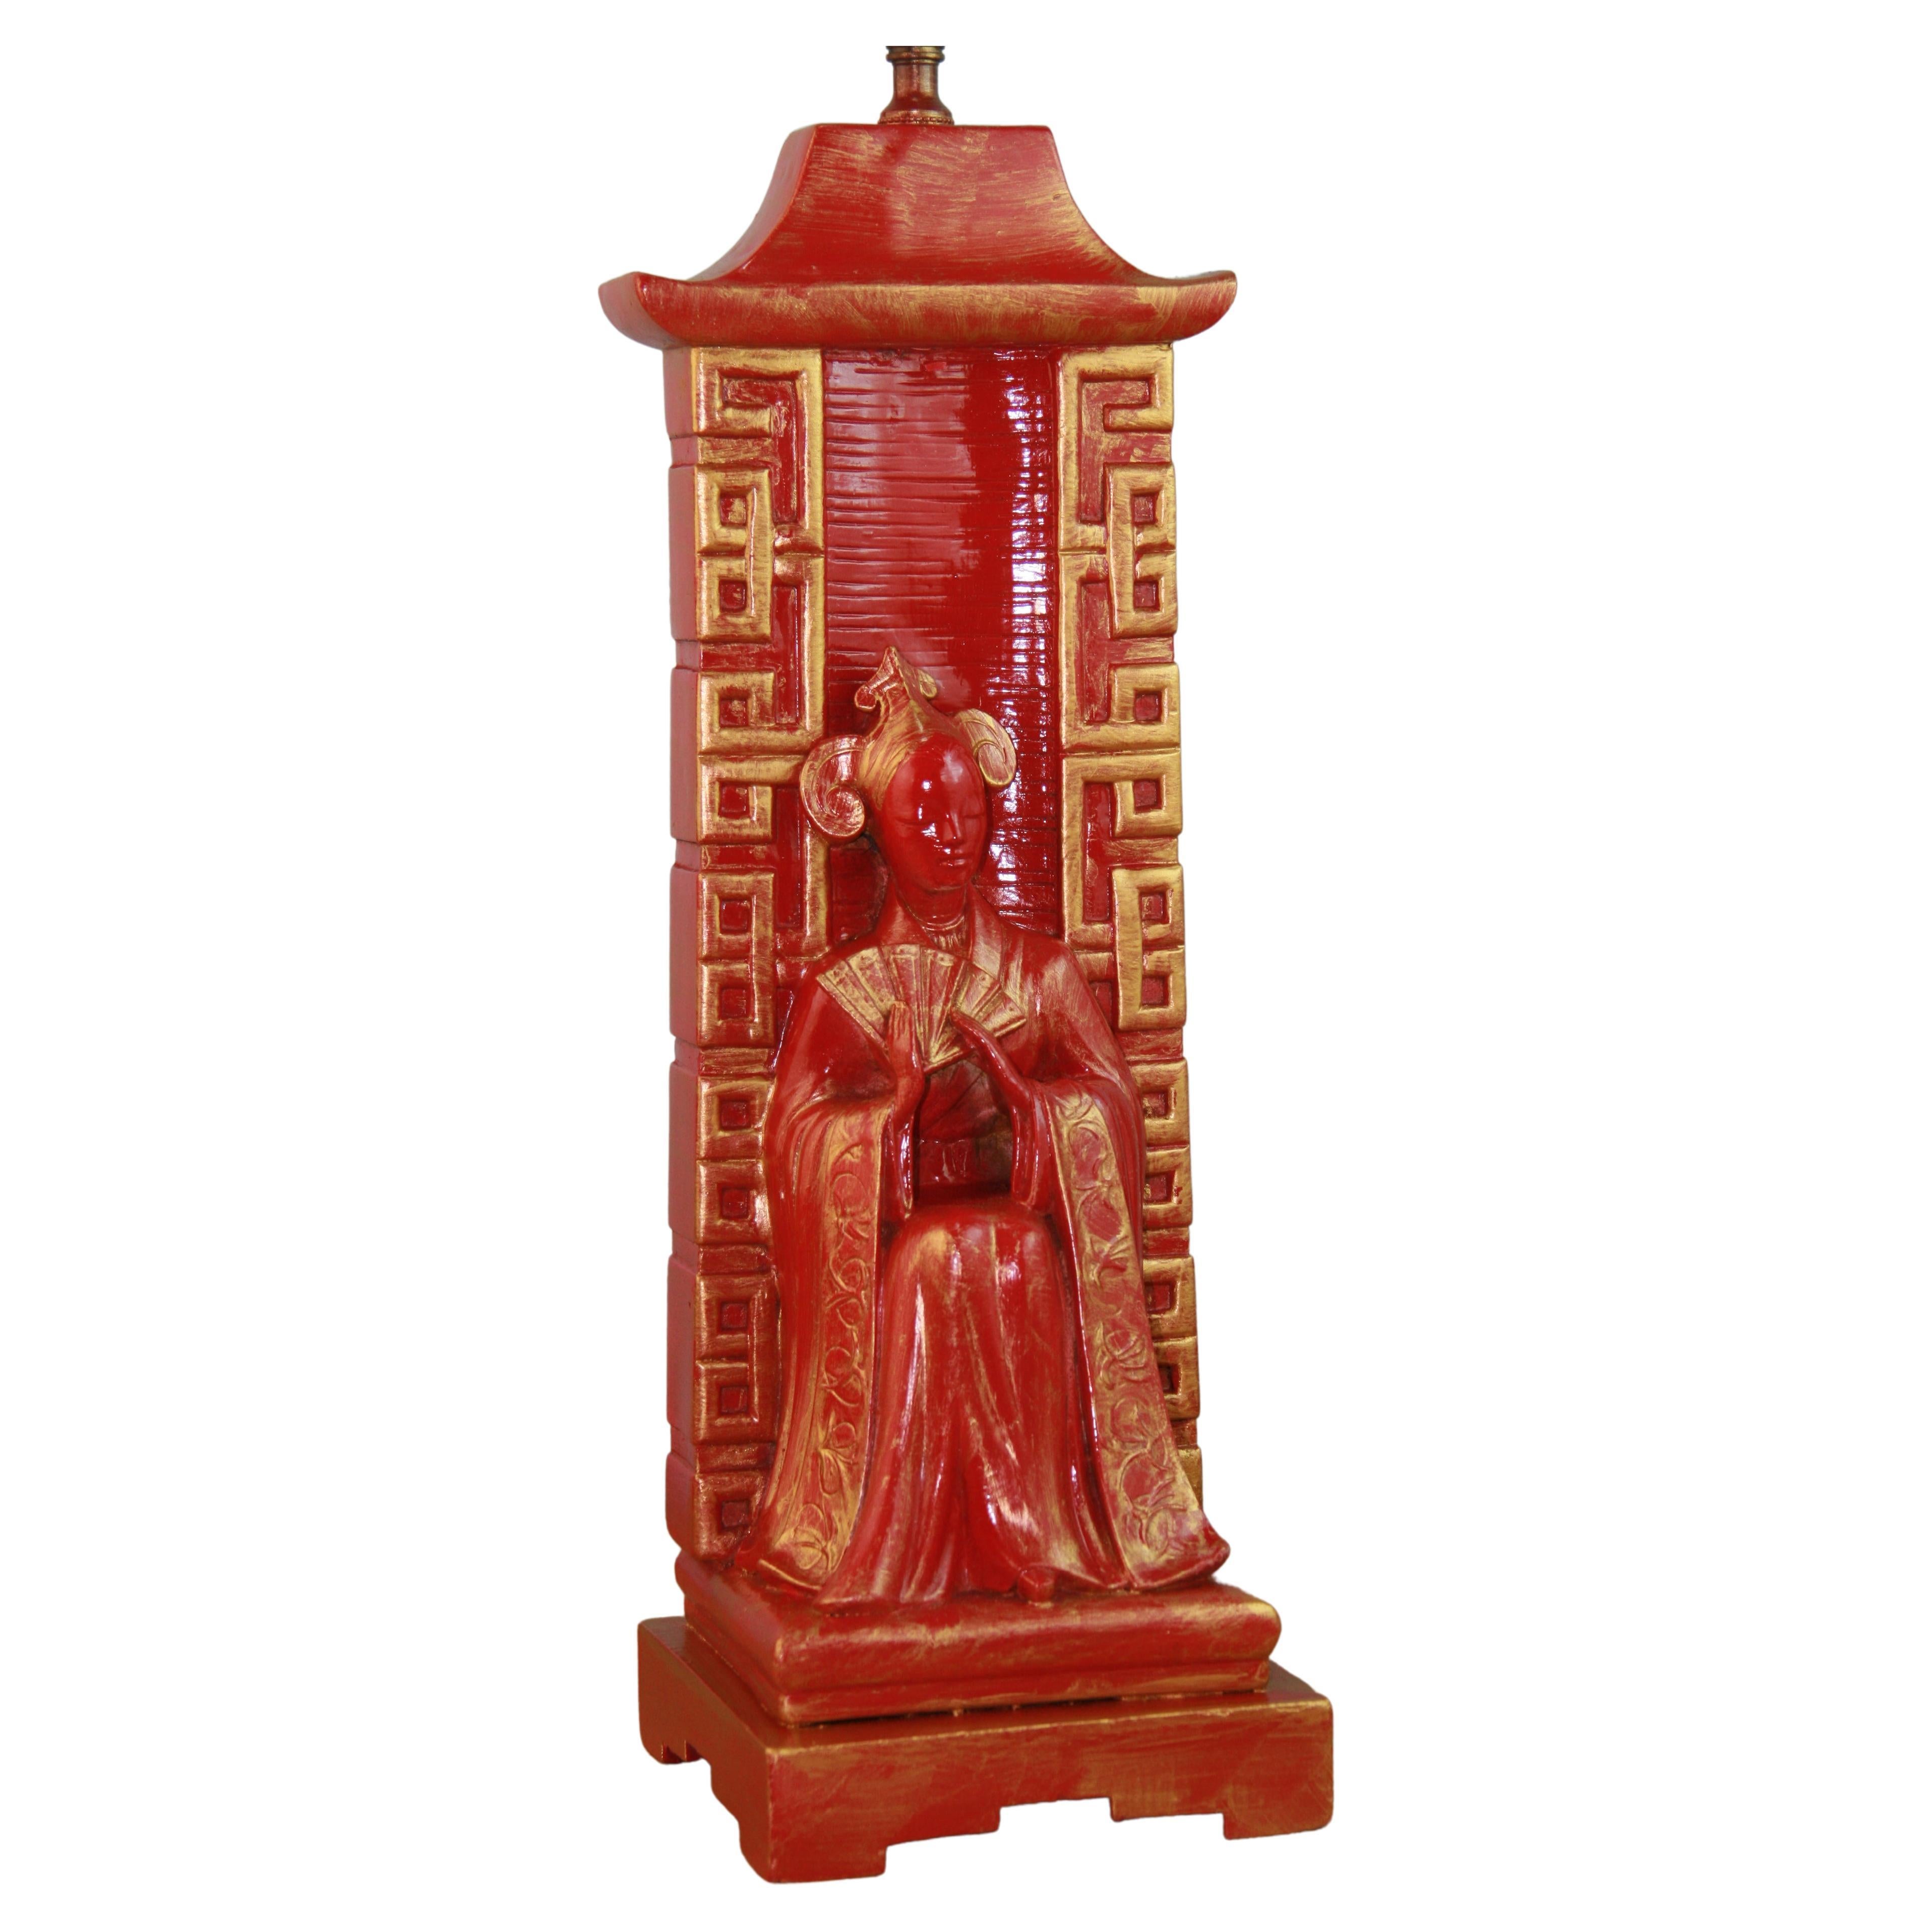 2-952 Lampe en plâtre représentant une figure chinoise au repos
Mesures : base de 6 x 6 pouces
Hauteur au sommet de la douille
rewired